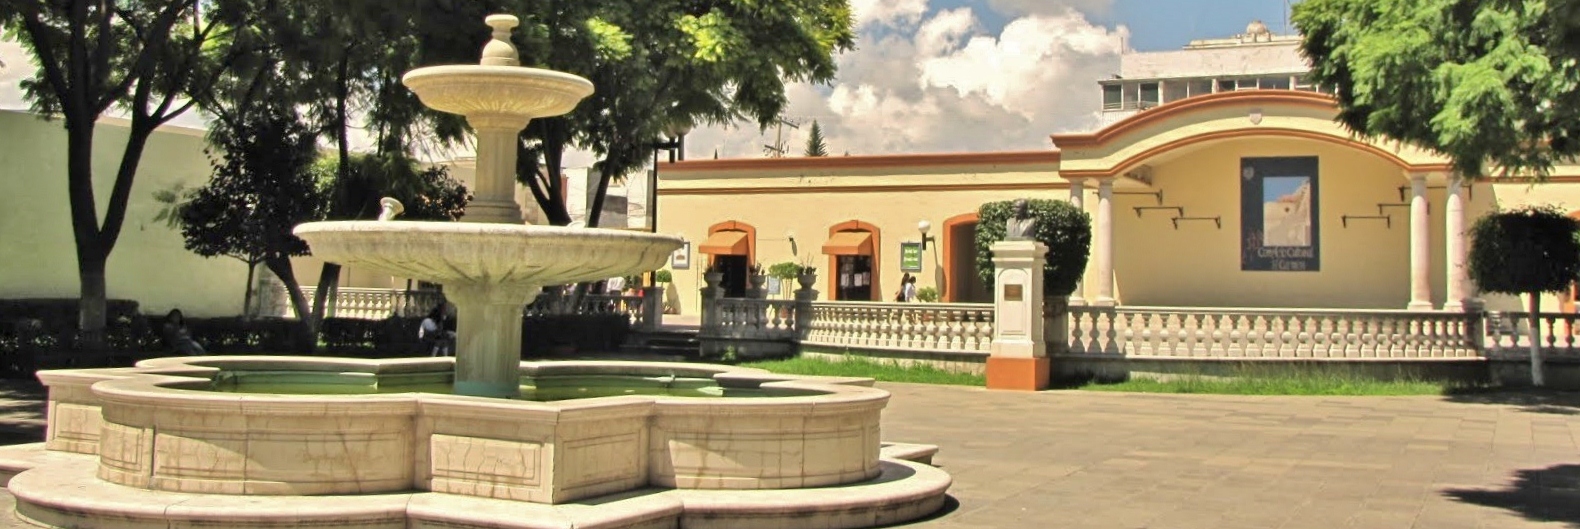 Tehuacán